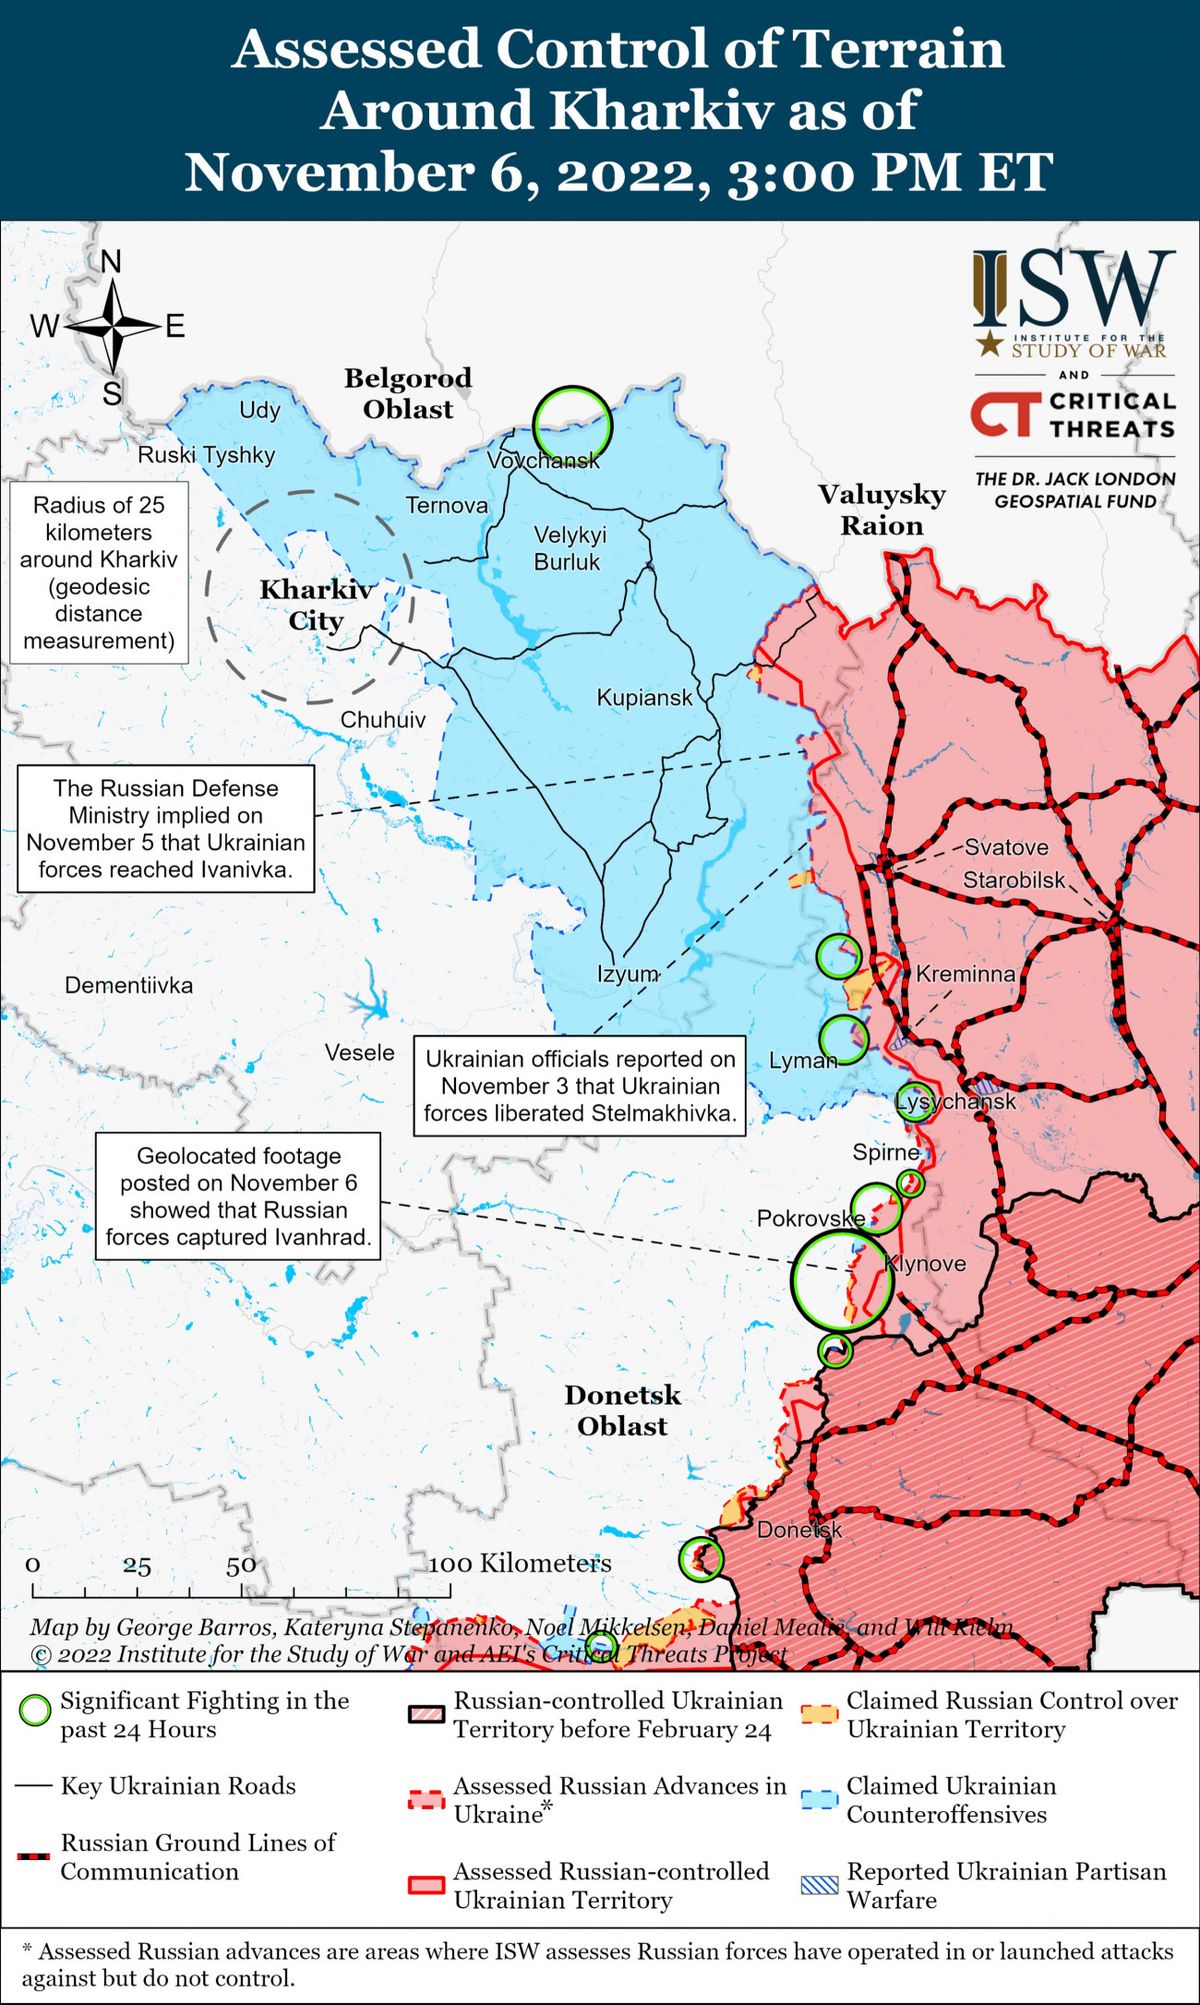 Mutatjuk az ISW térképét a kelet-ukrajnai front tavaly novemberi helyzetéről. A zöld körök a legsúlyosabb harcok helyszíneit jelölik. A kék színnel jelzett területek az ukránok, míg a piros színnel jelzettek az oroszok által ellenőrzött területek. Fotó forrása: Twitter/ISW